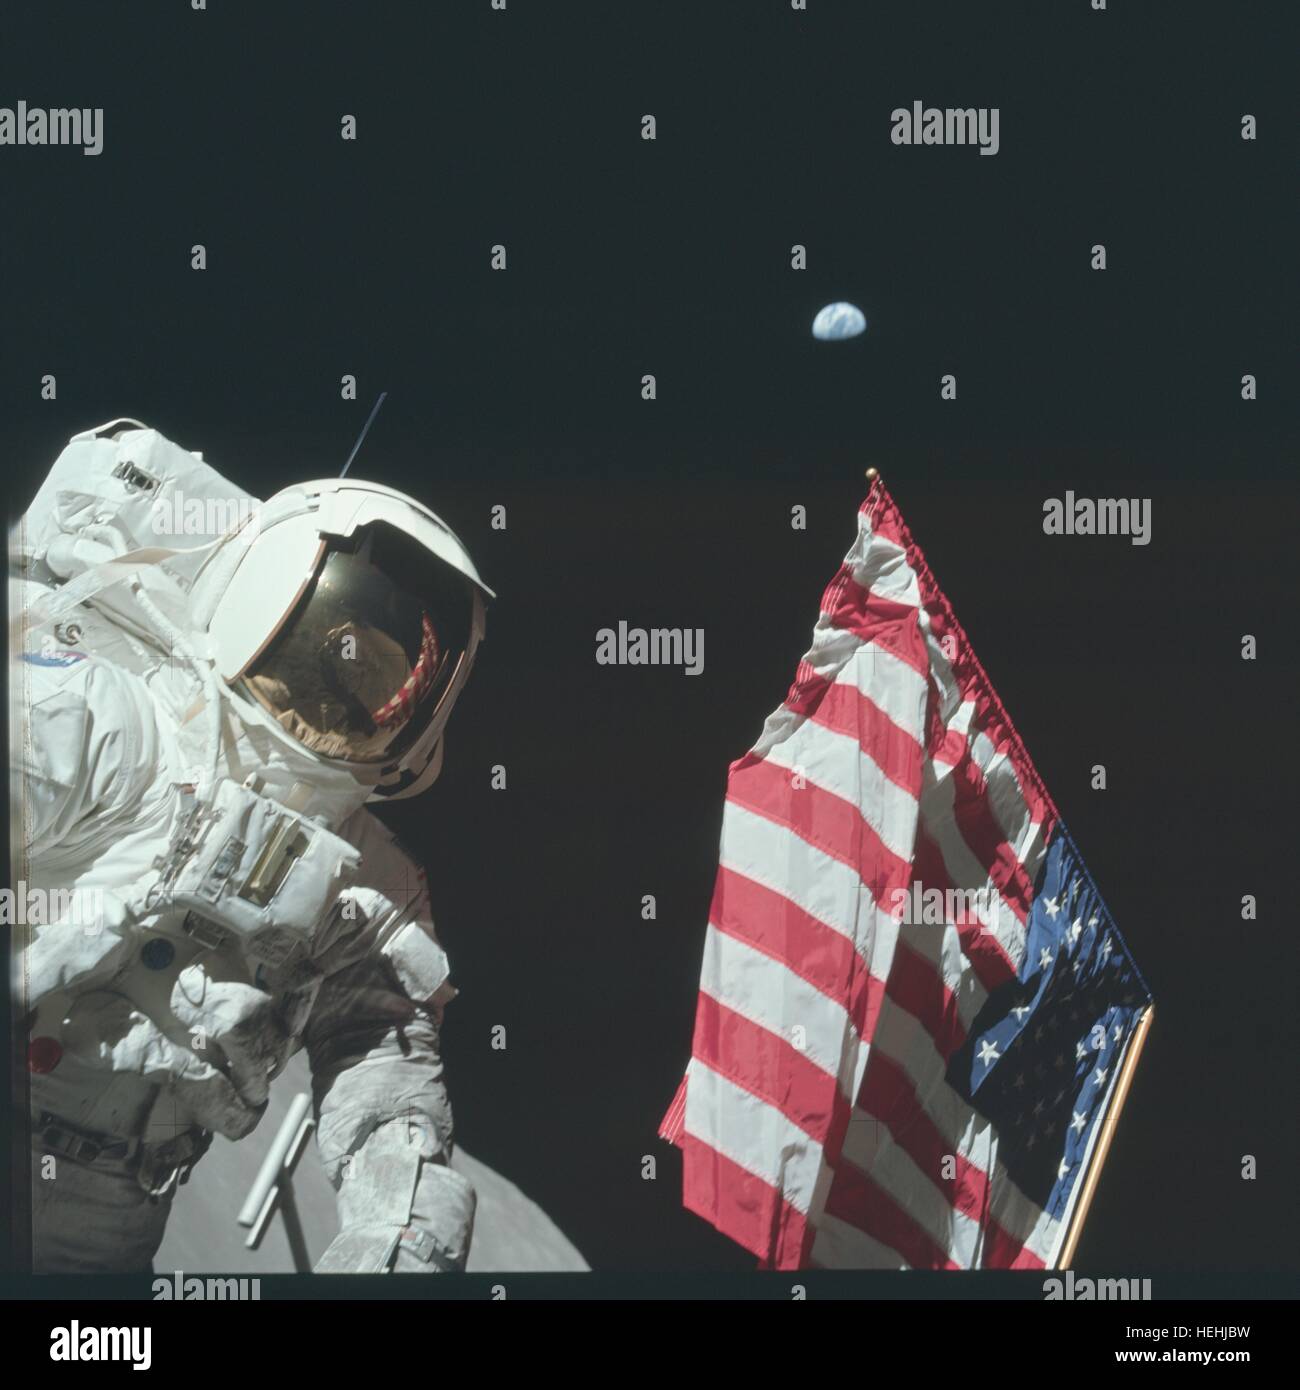 La NASA Apollo 17 atterraggio lunare missione astronauta Harrison Schmitt sorge accanto a una bandiera americana durante la prima attività extravehicular sulla superficie lunare Dicembre 11, 1972 sulla luna. Astronauta Cernan gene può essere visto nelle visiere di riflessione. Foto Stock